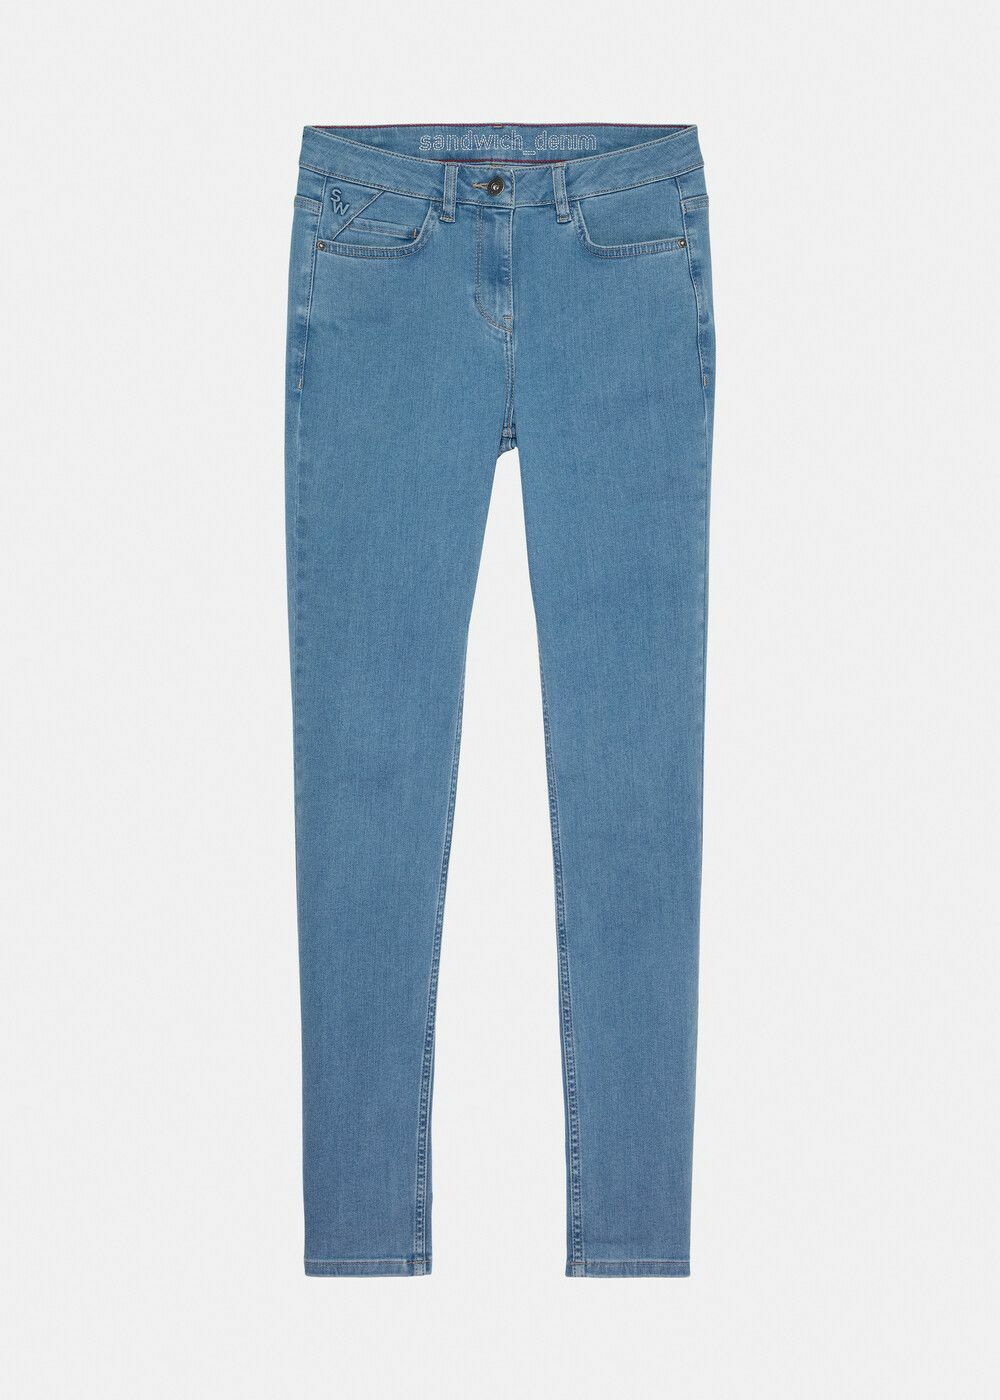 Meisje Absorberen verschijnen Sandwich Skinny High Waist Jeans online kopen bij Carriera Damesmode.  24001831-40054